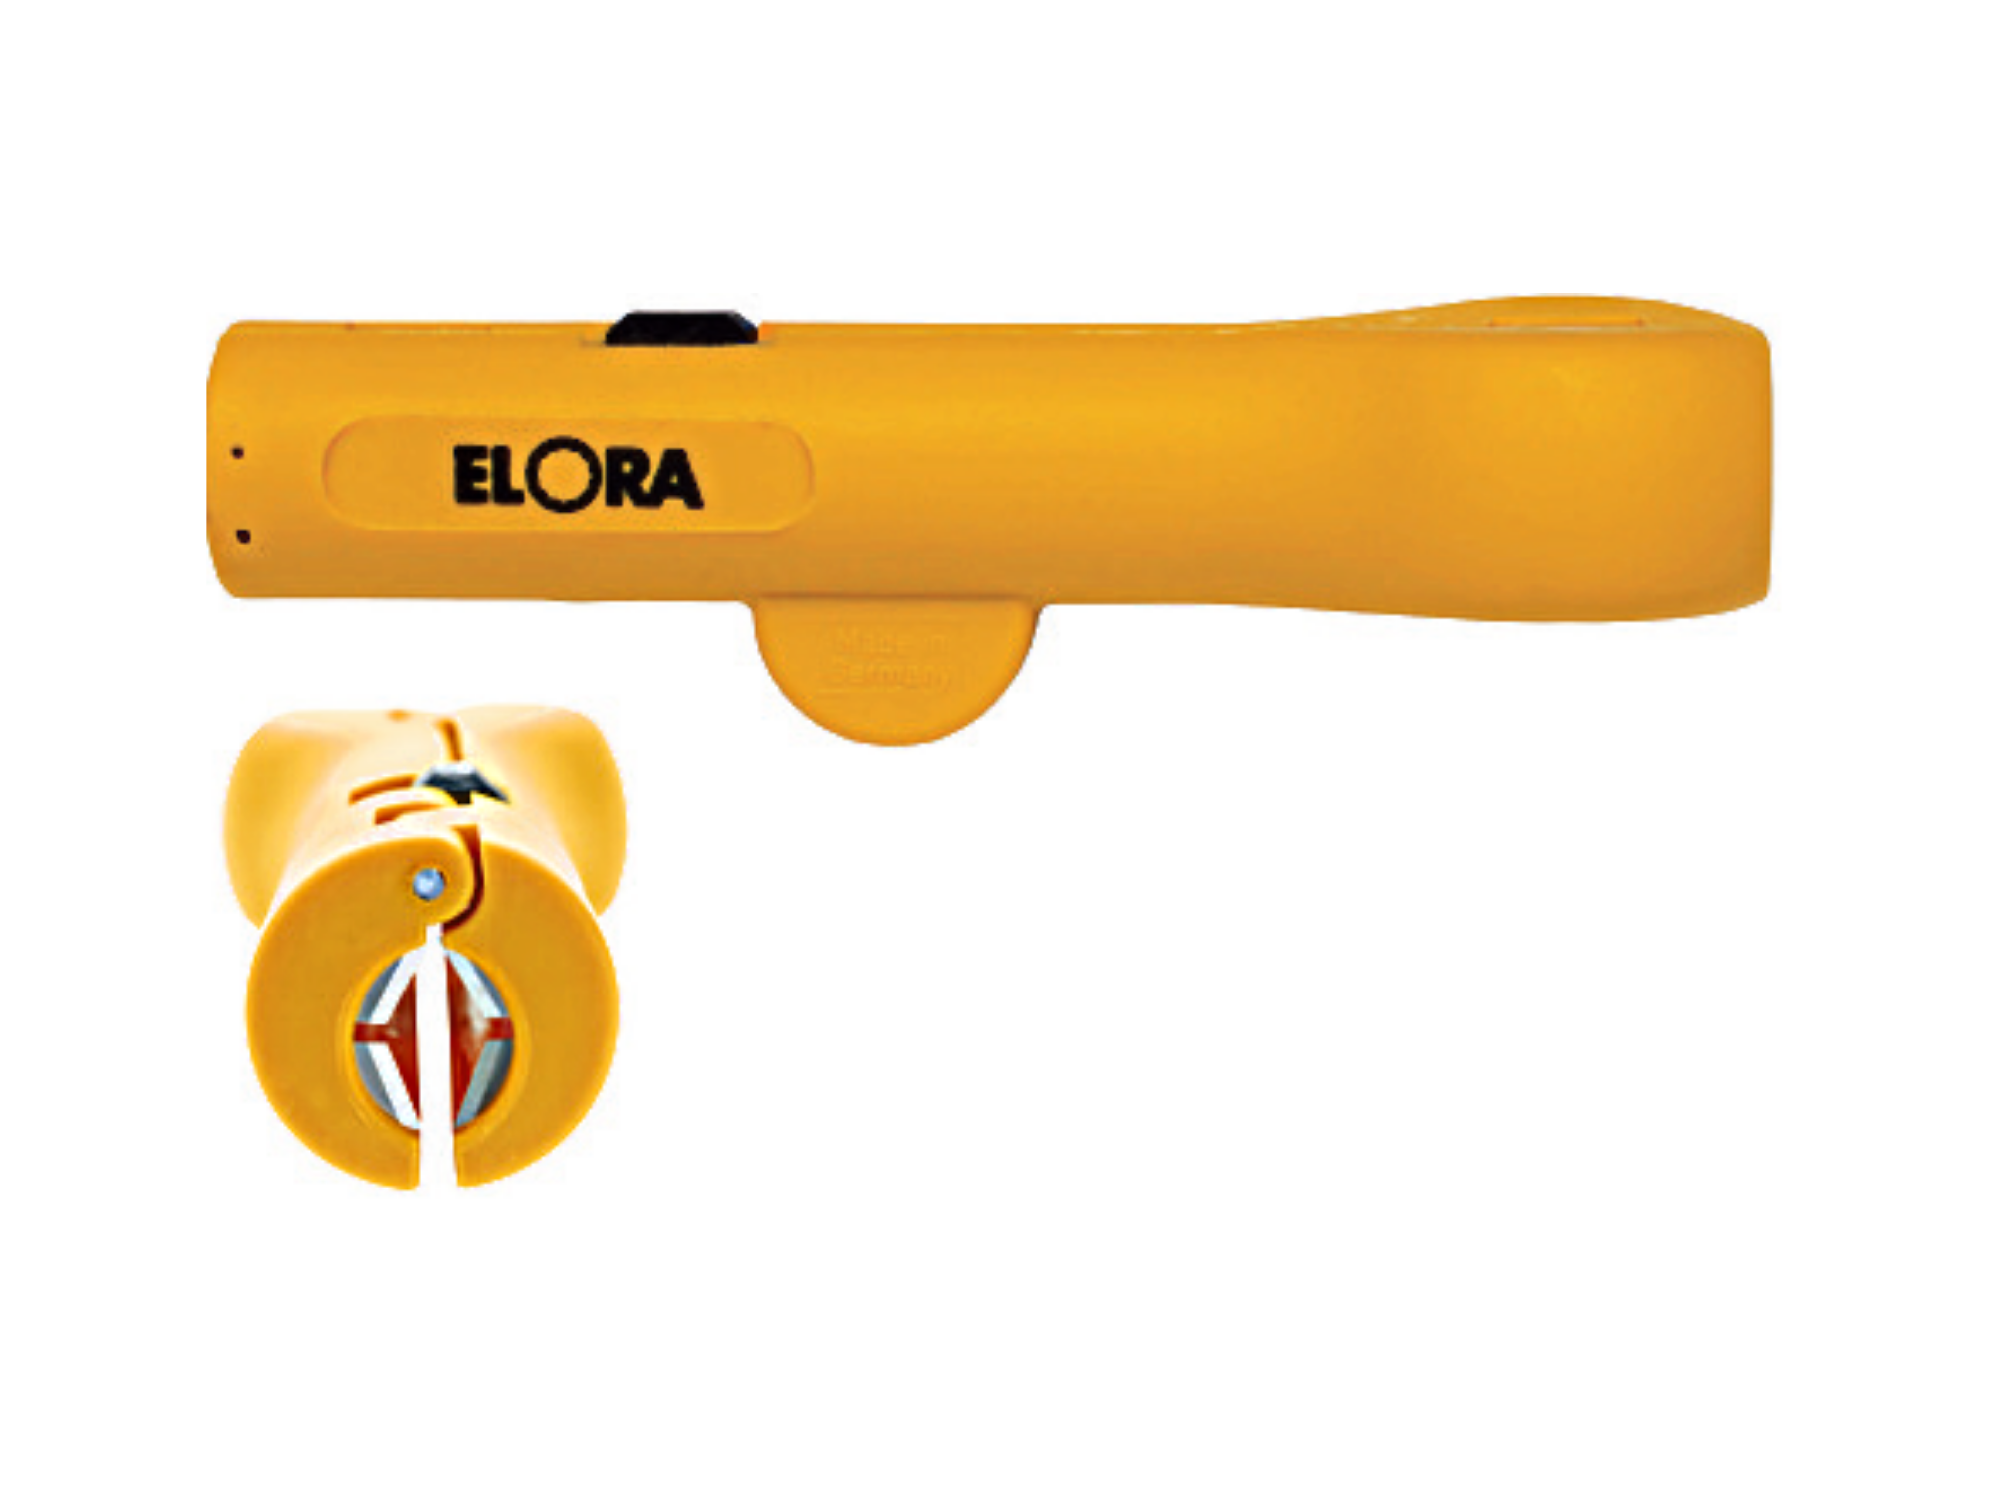 ELORA 1083 Round Wire Stripper (ELORA Tools) - Premium Wire Stripper from ELORA - Shop now at Yew Aik.